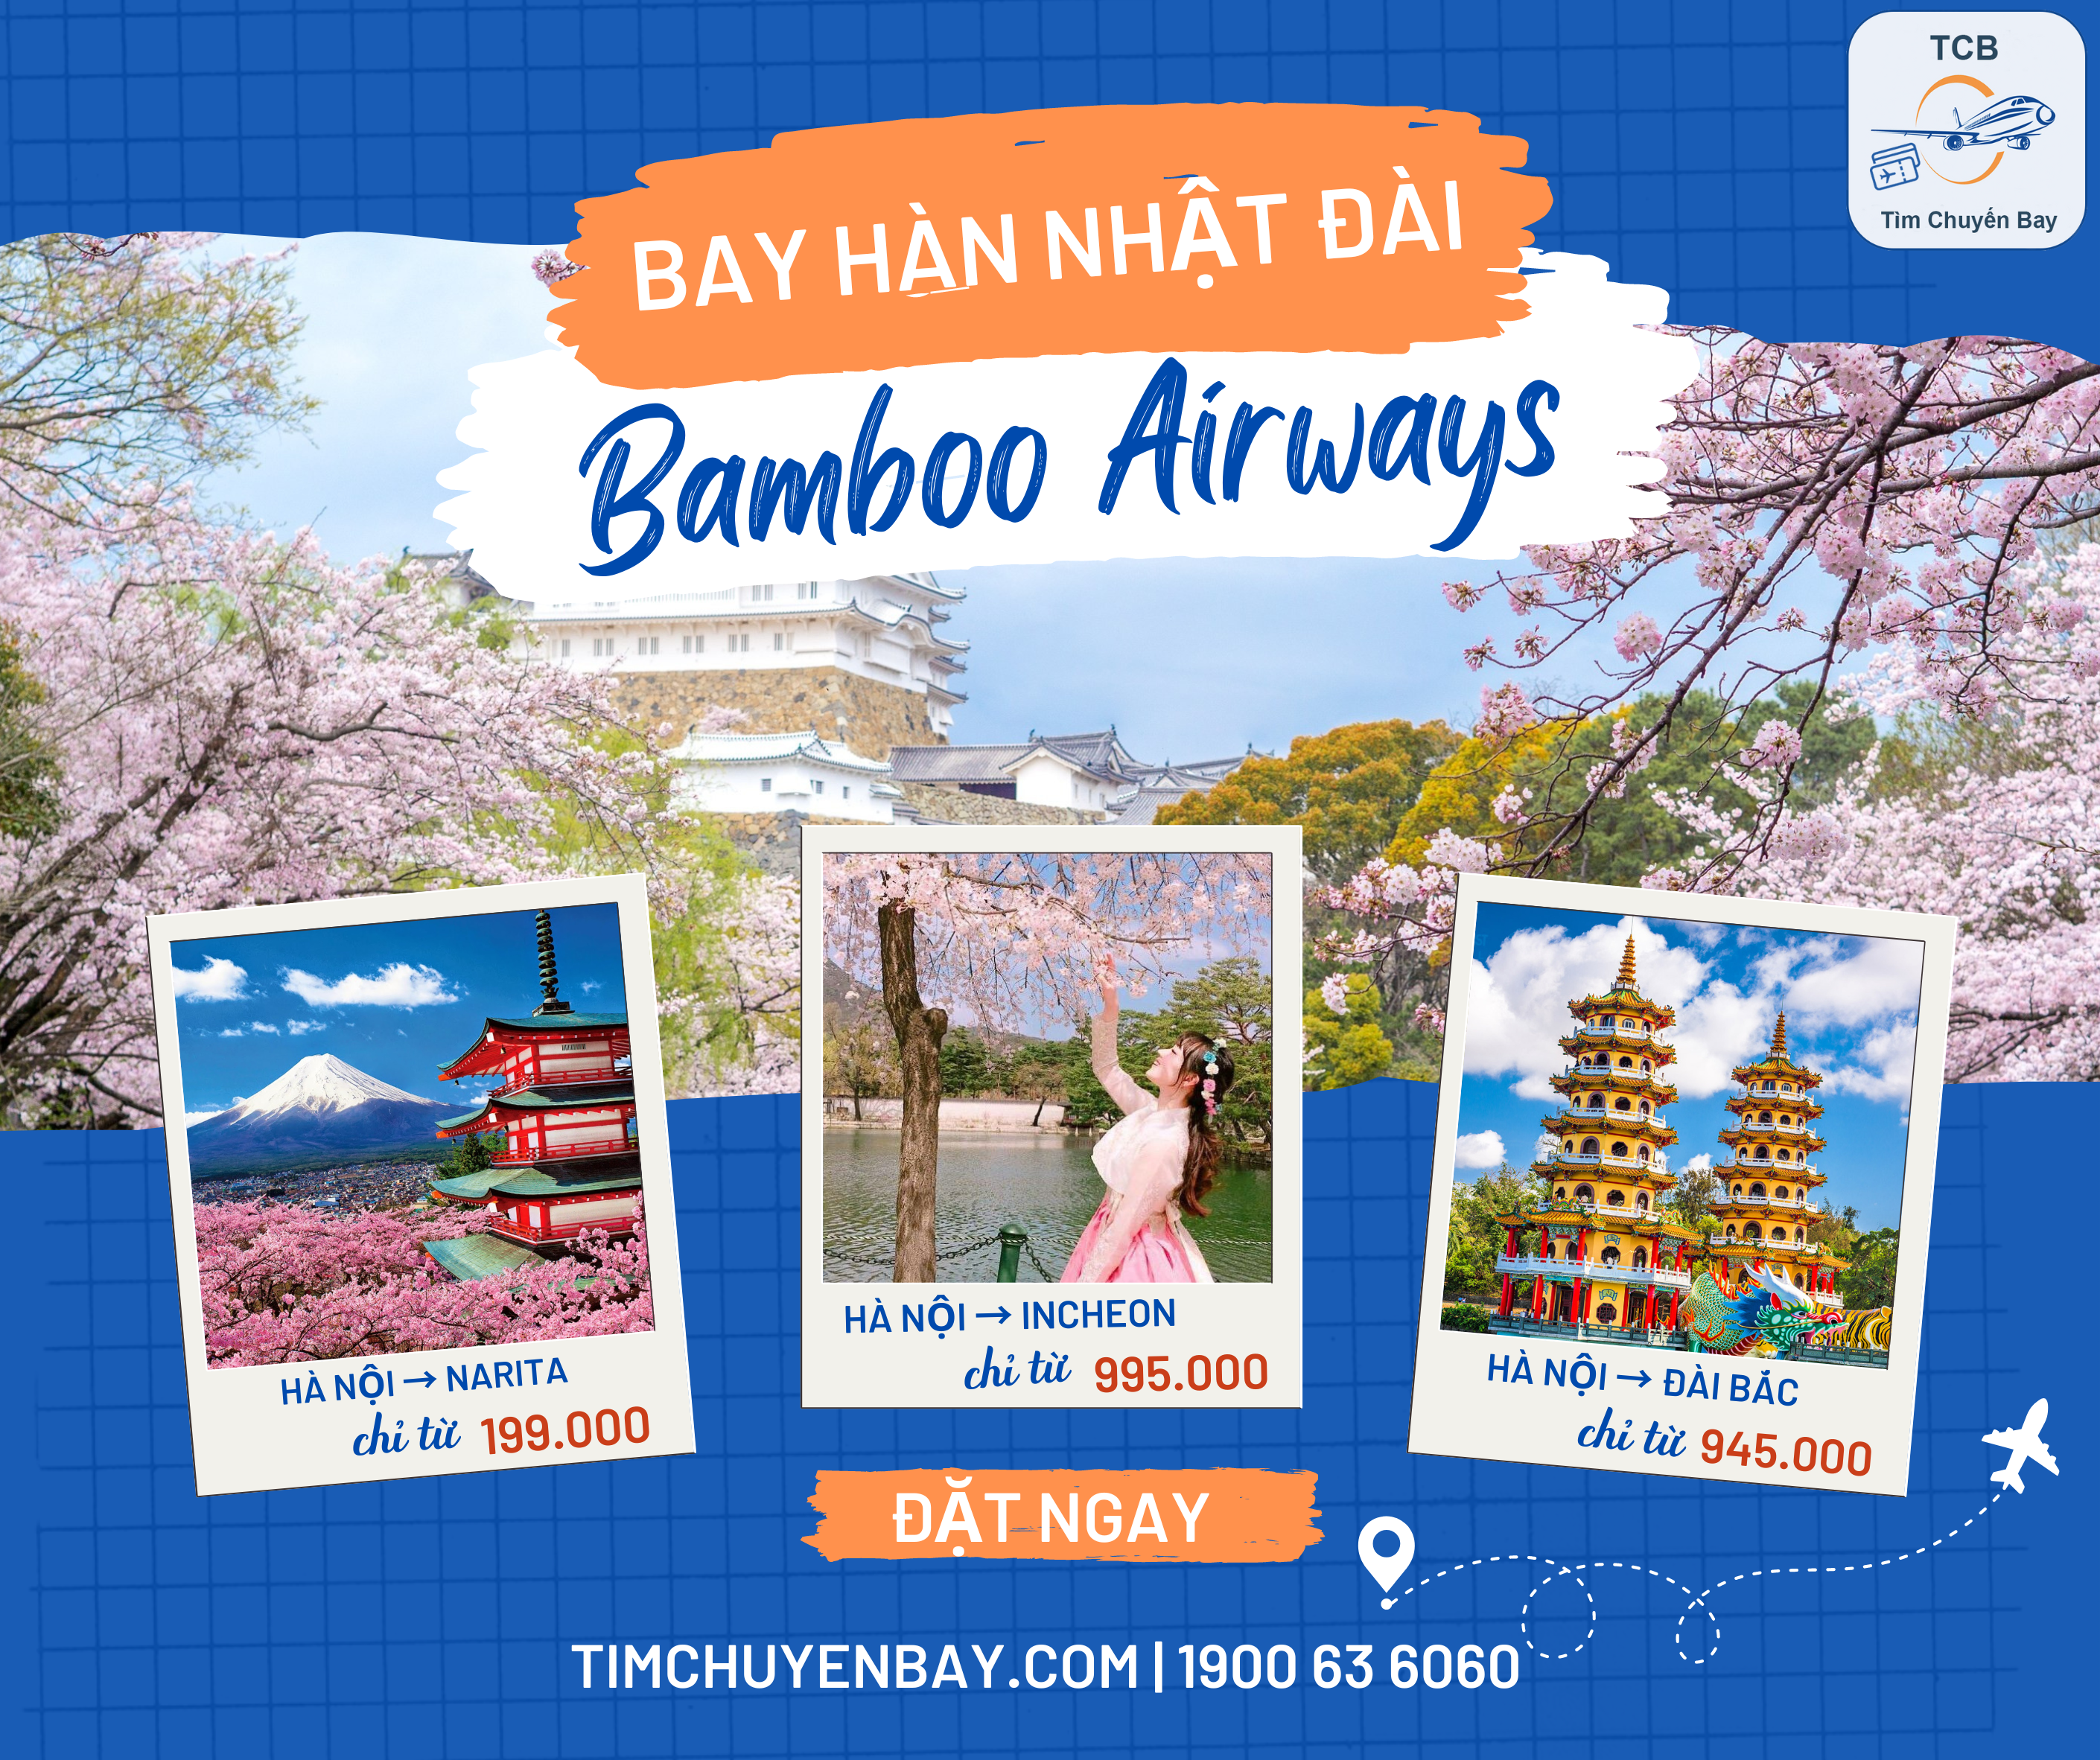 Ưu đãi bay Nhật Bản, Hàn Quốc, Đài Loan cùng Bamboo Airways